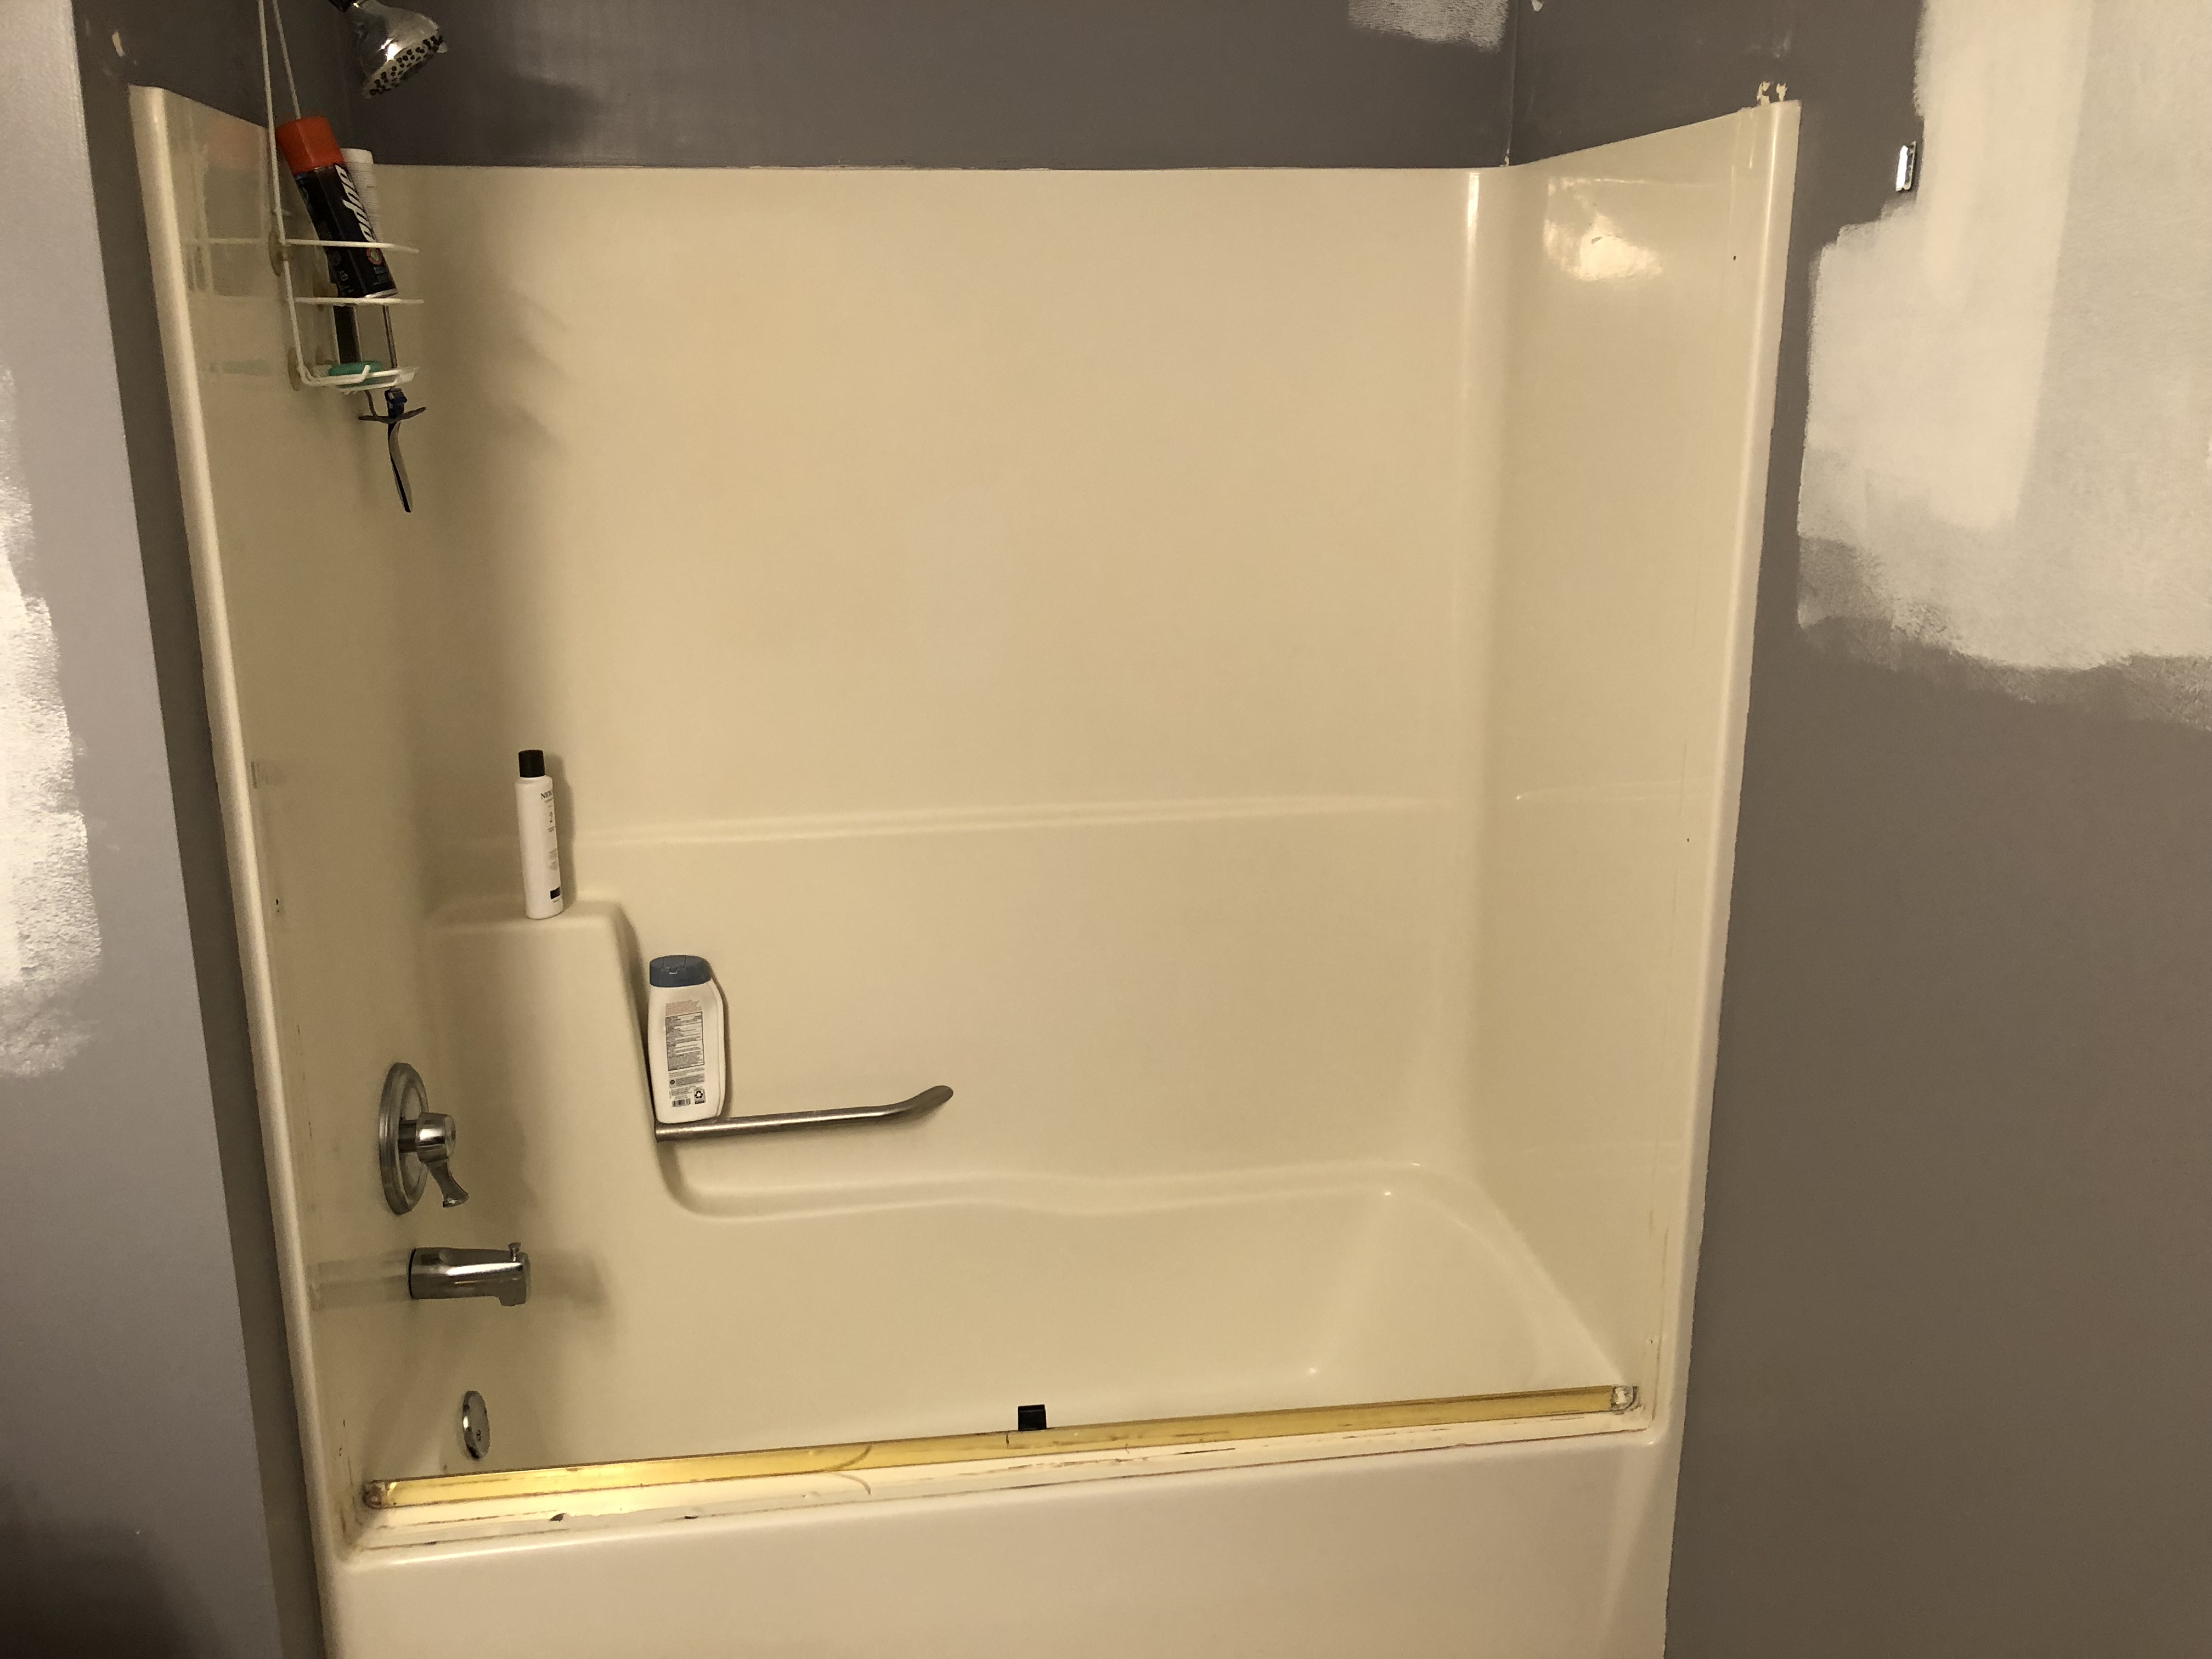 Lakeville Bathroom Remodel - Before